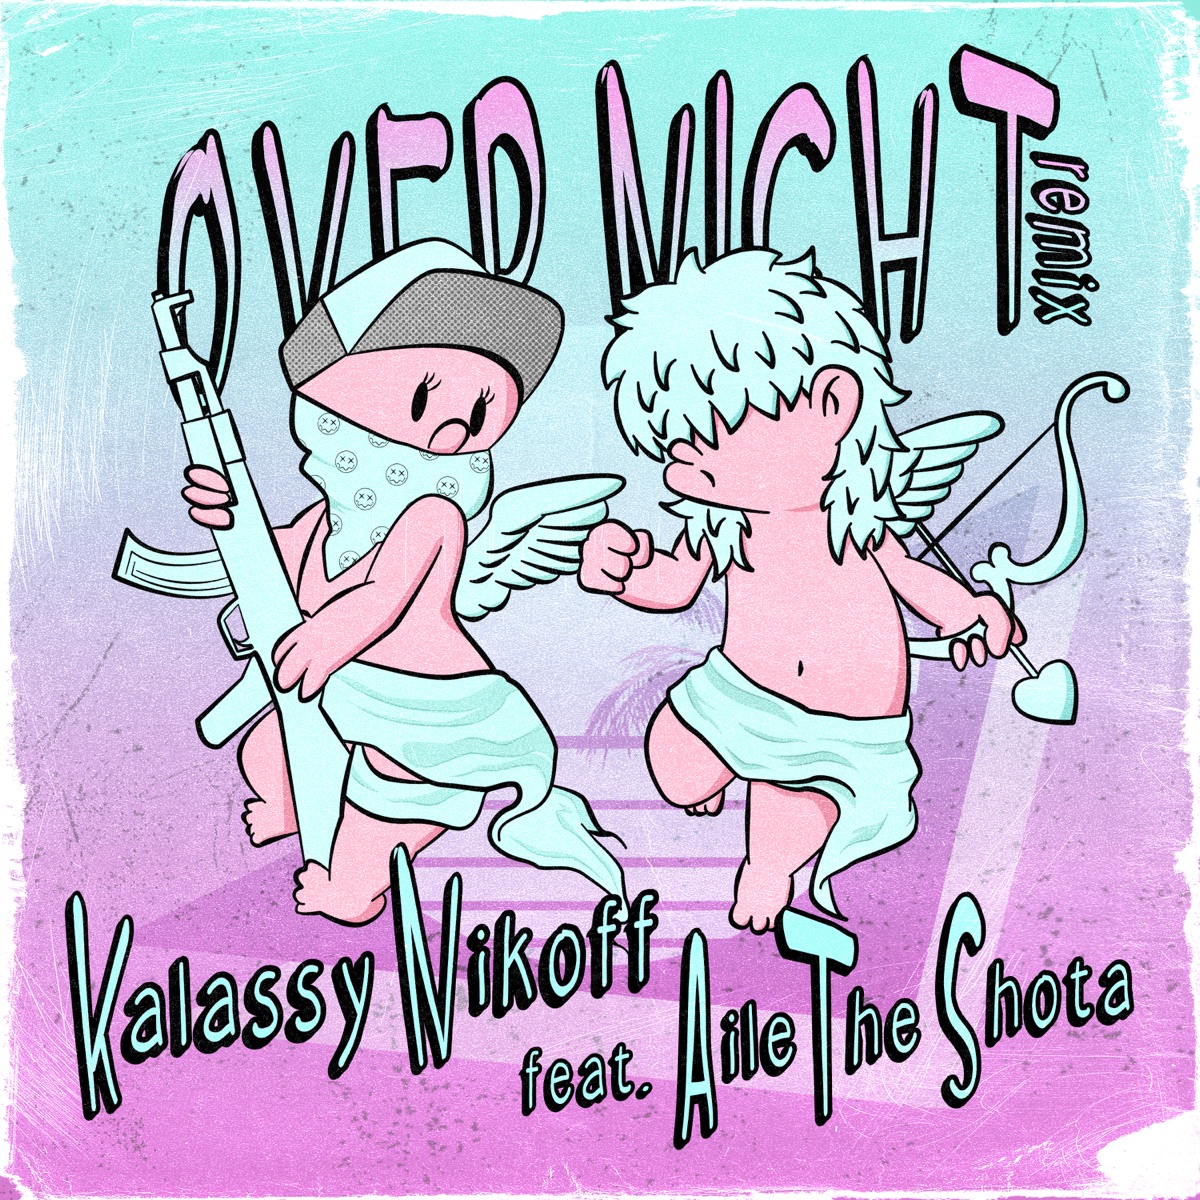 『Kalassy Nikoff - Overnight Remix feat. Aile The Shota』収録の『Overnight Remix feat. Aile The Shota』ジャケット